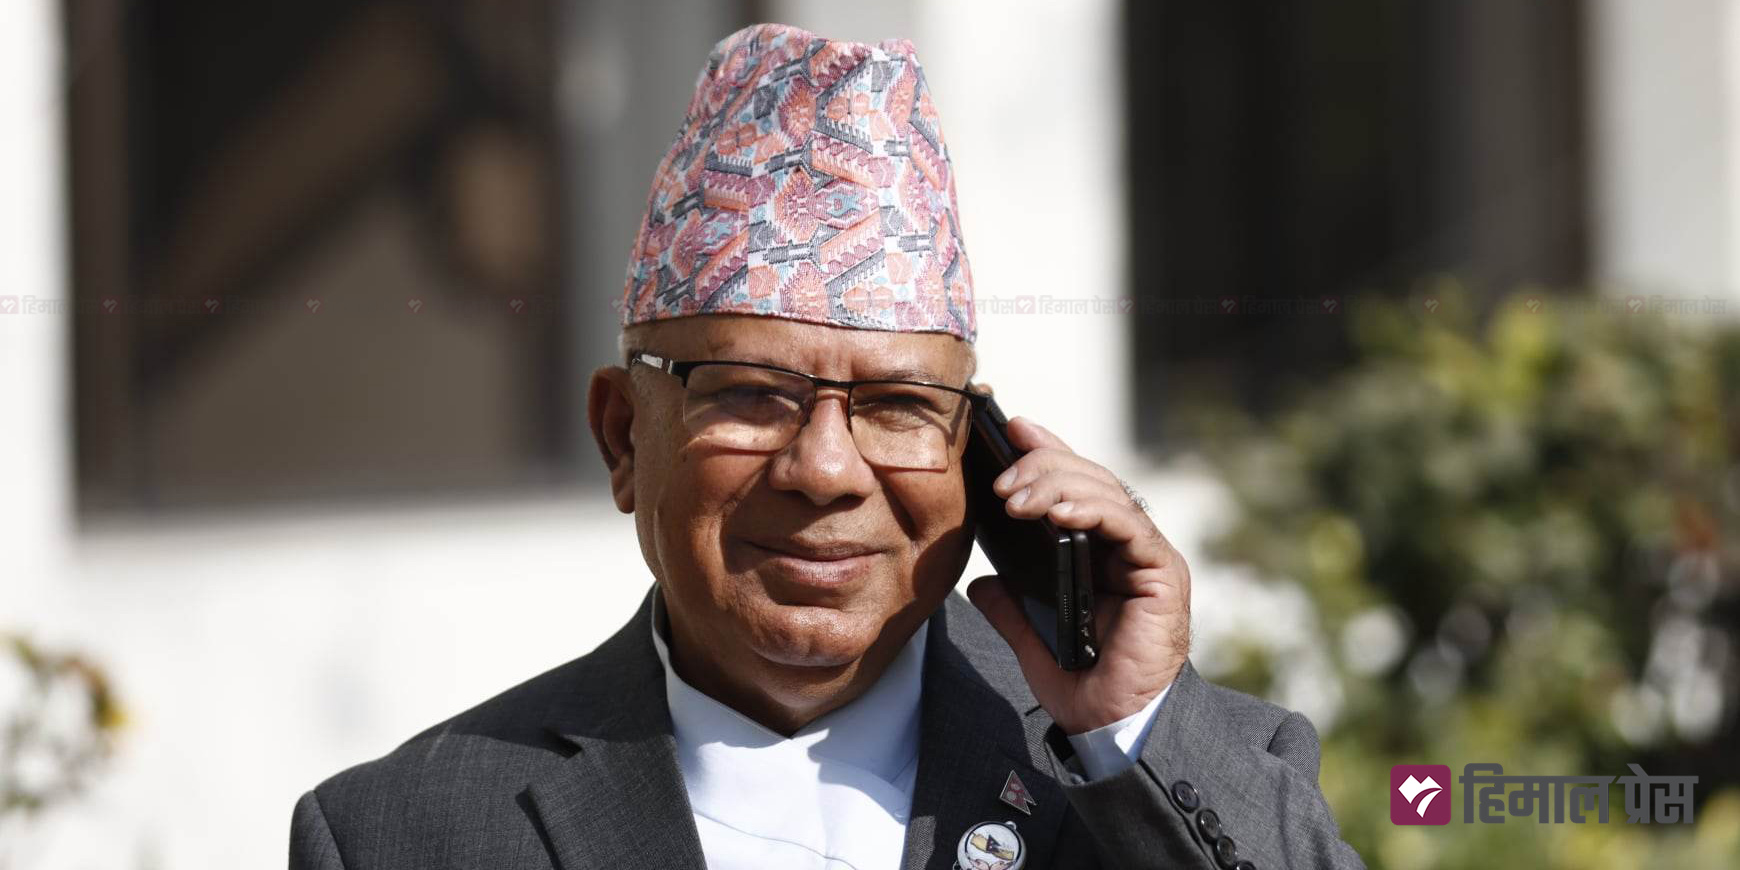 संस्कृतिका संरक्षणमा विशेष ध्यान दिनुपर्छ : अध्यक्ष नेपाल